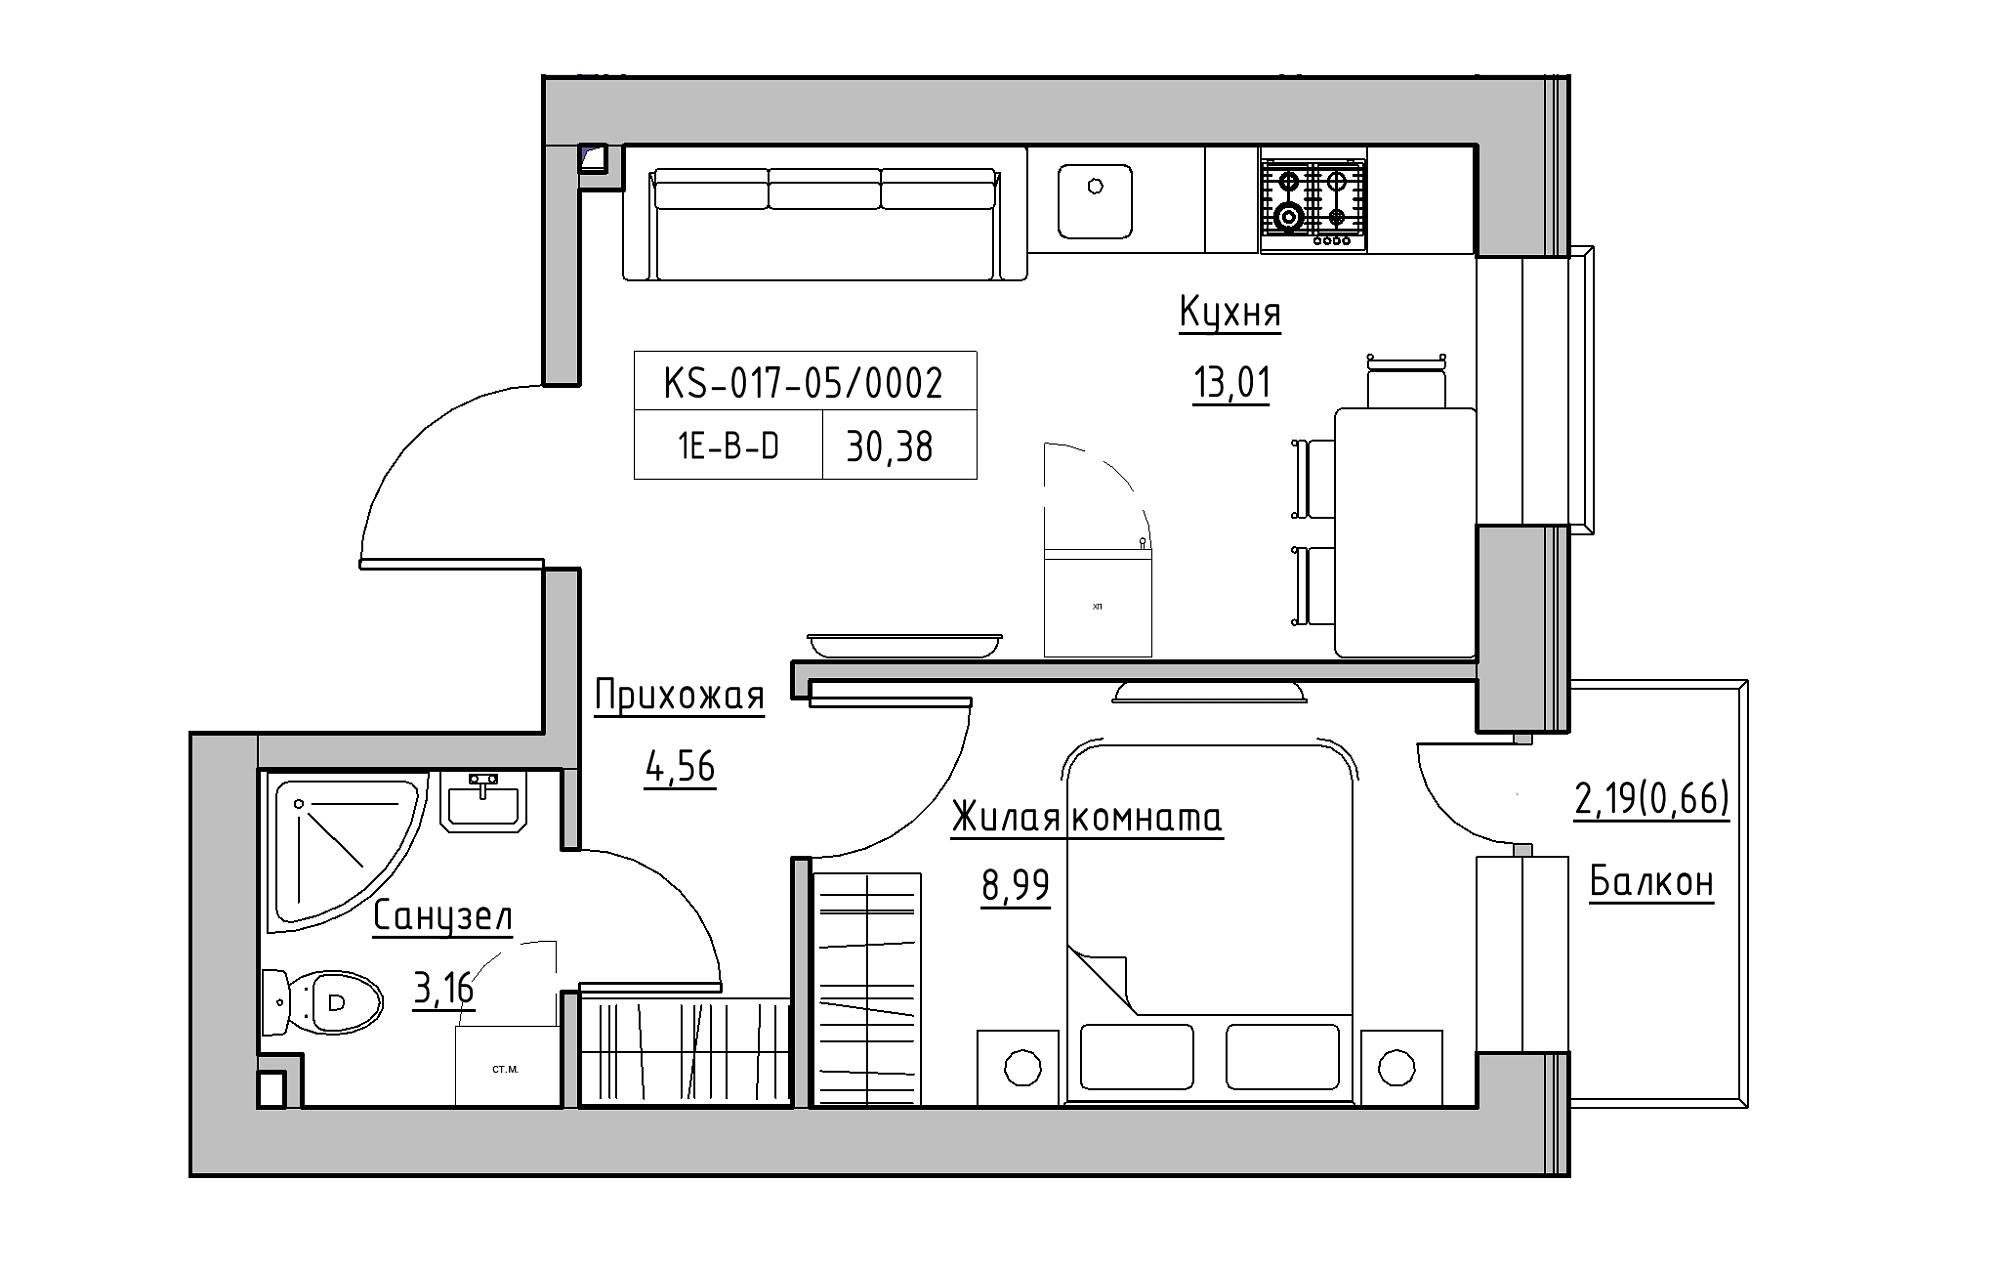 Планировка 1-к квартира площей 30.38м2, KS-017-05/0002.